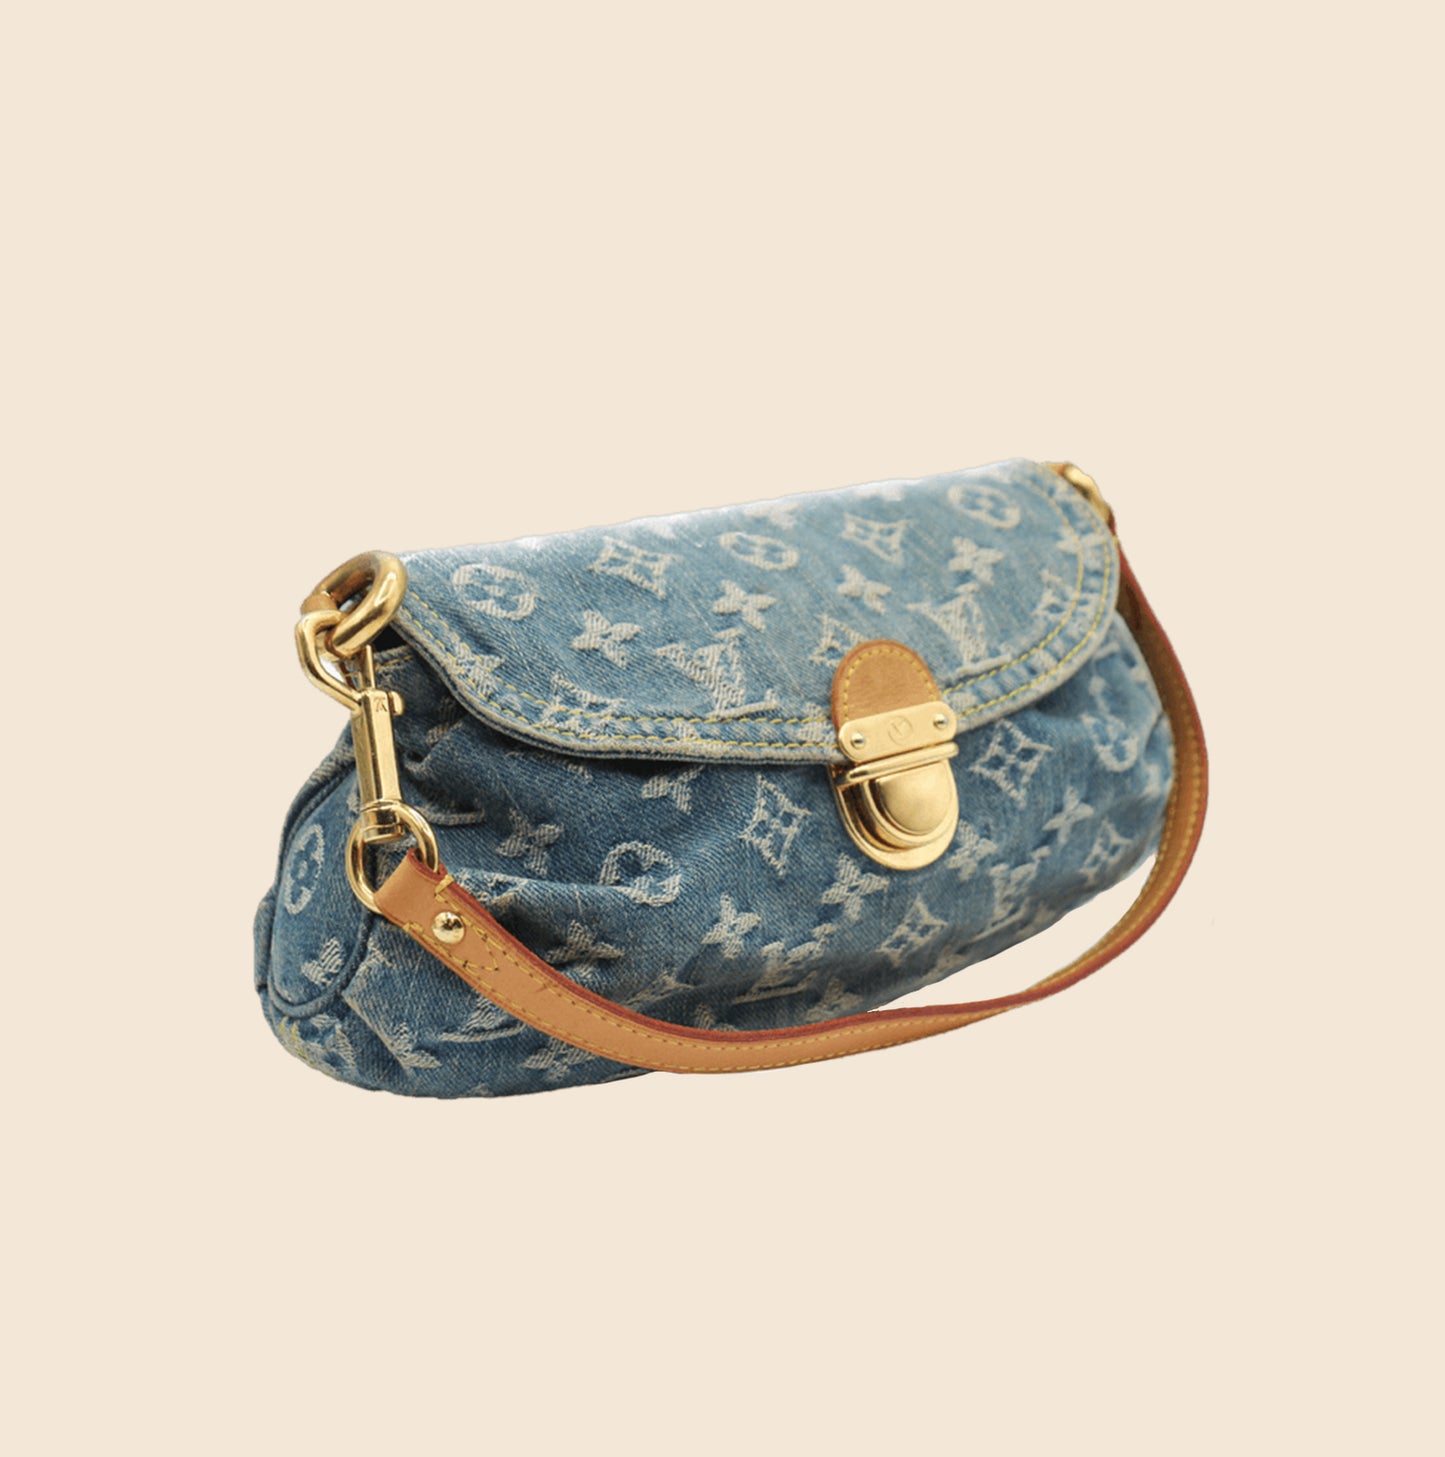 Louis Vuitton Blue Pleaty Denim Shoulder Bag - The Nostalgia Club